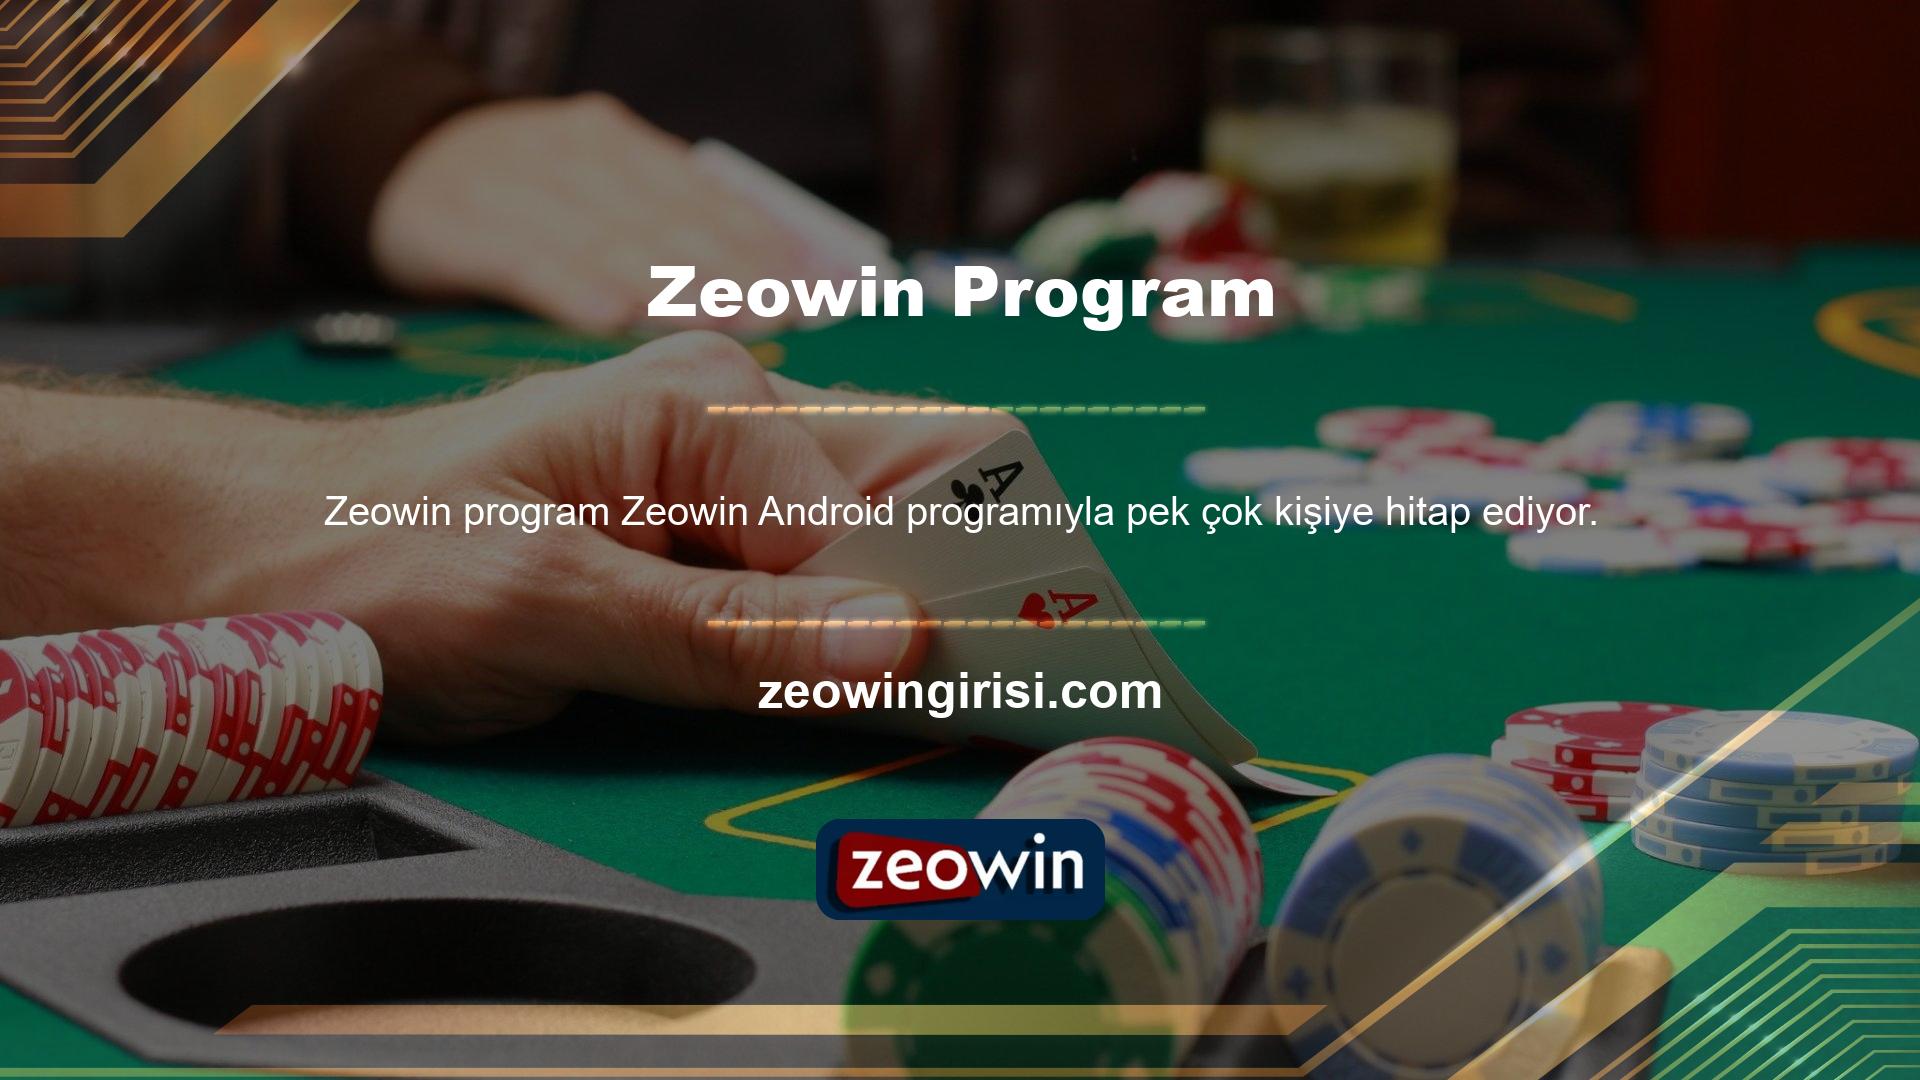 Zeowin mobil uygulamasının sağ alt kısmında yer alan buton kayıt ve üyelik işlemlerini başlatmanızı sağlar